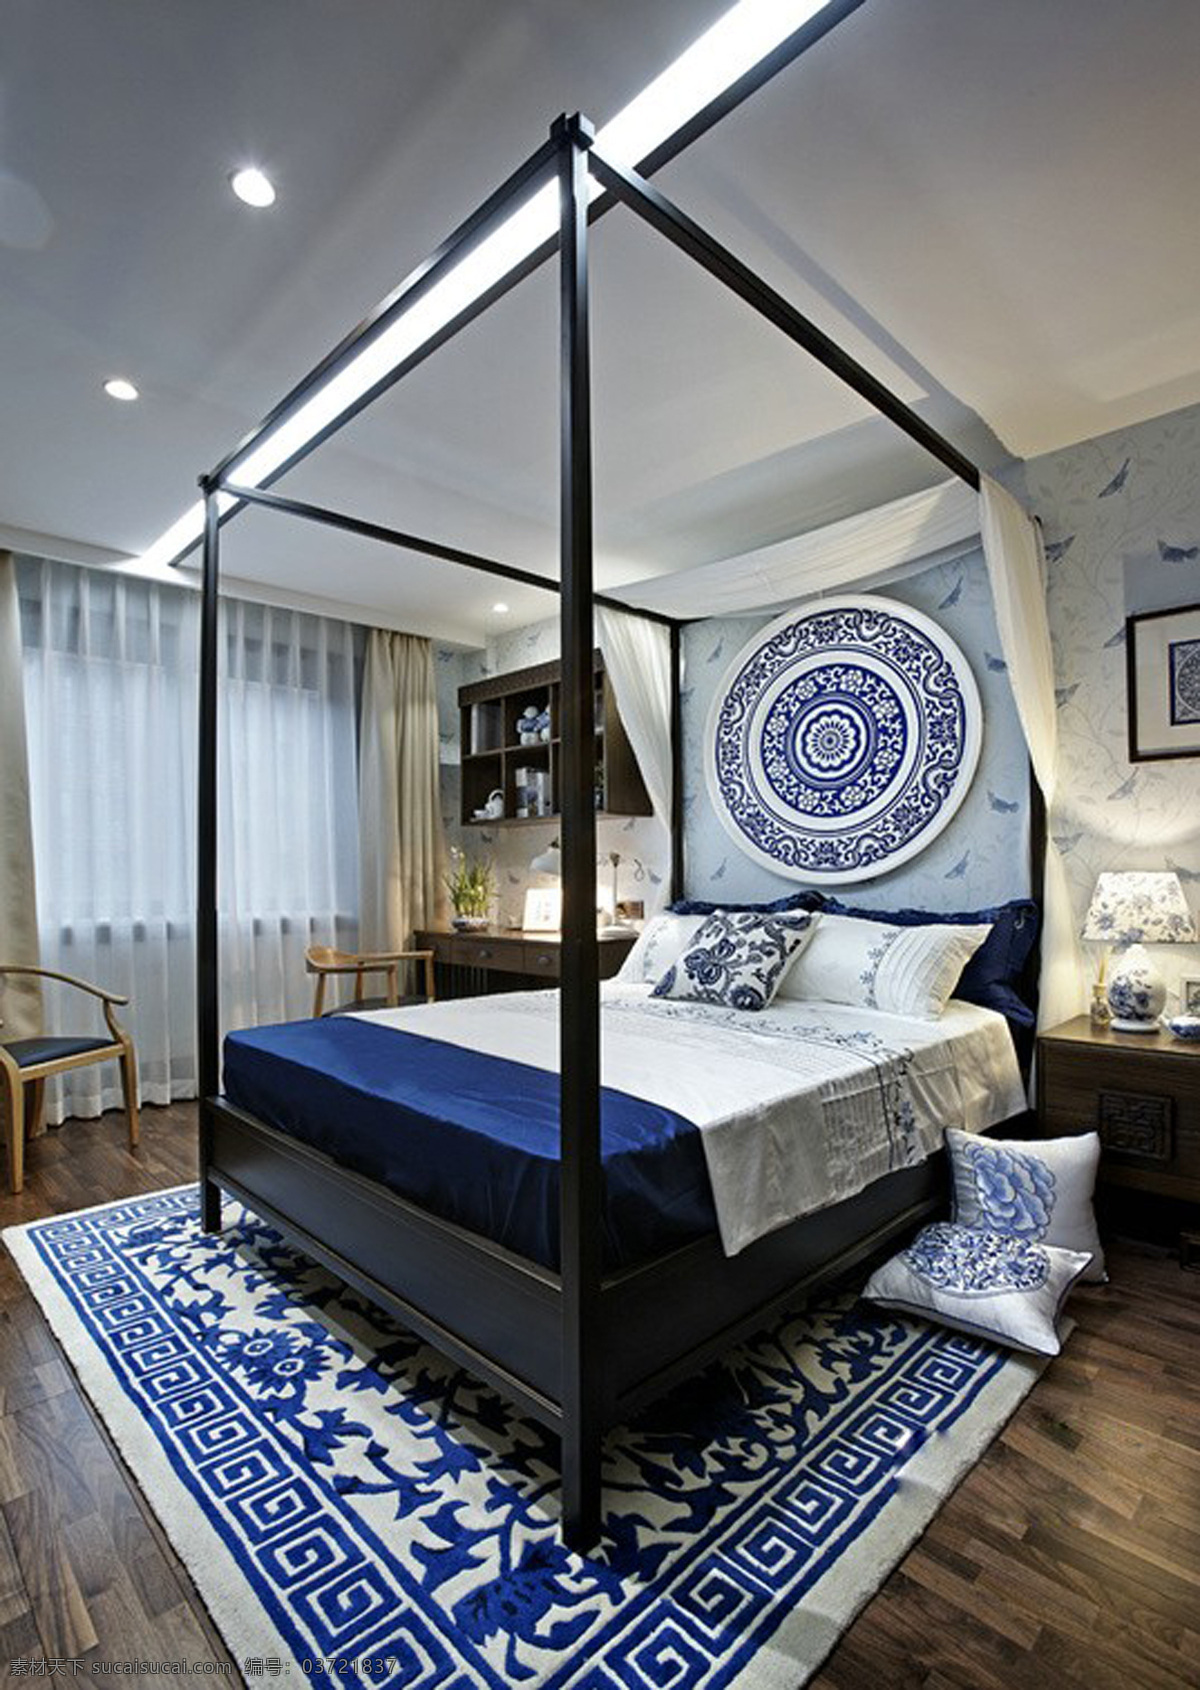 家装 环境设计 欧式 室内 室内设计 卧室 效果图 资料 设计素材